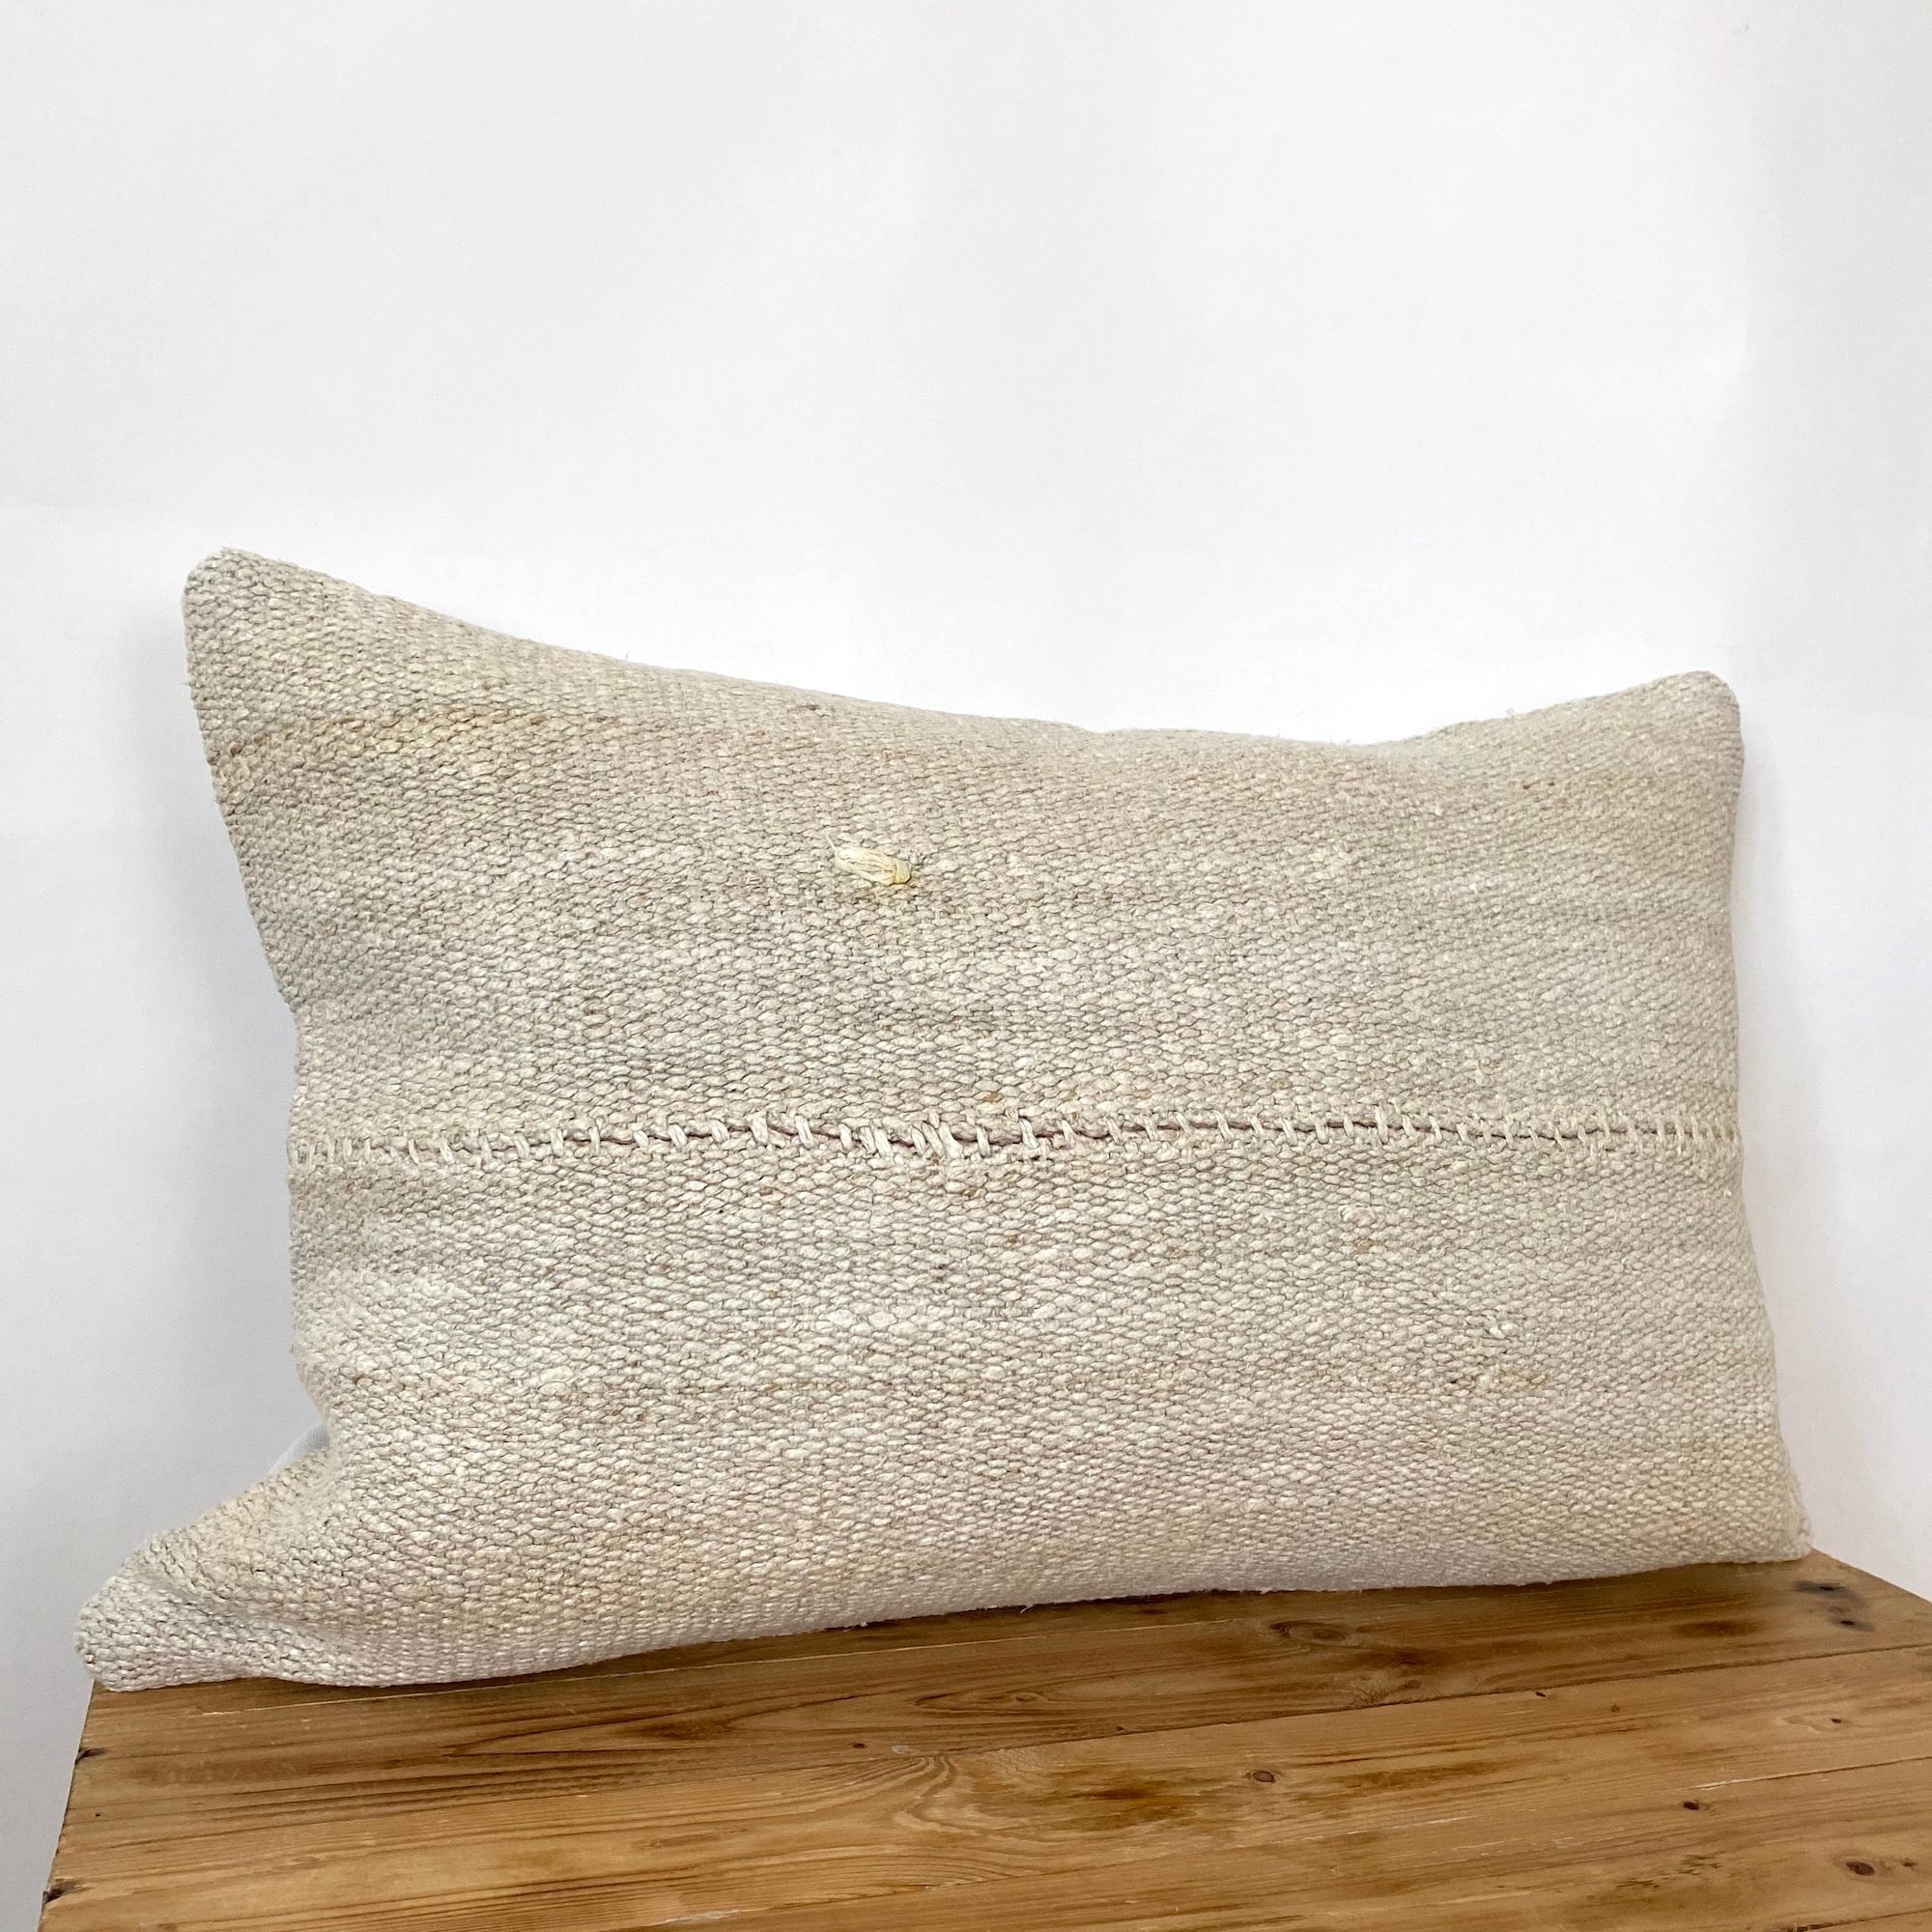 Fleurettah - Beige Hemp Pillow Cover - kudenrugs